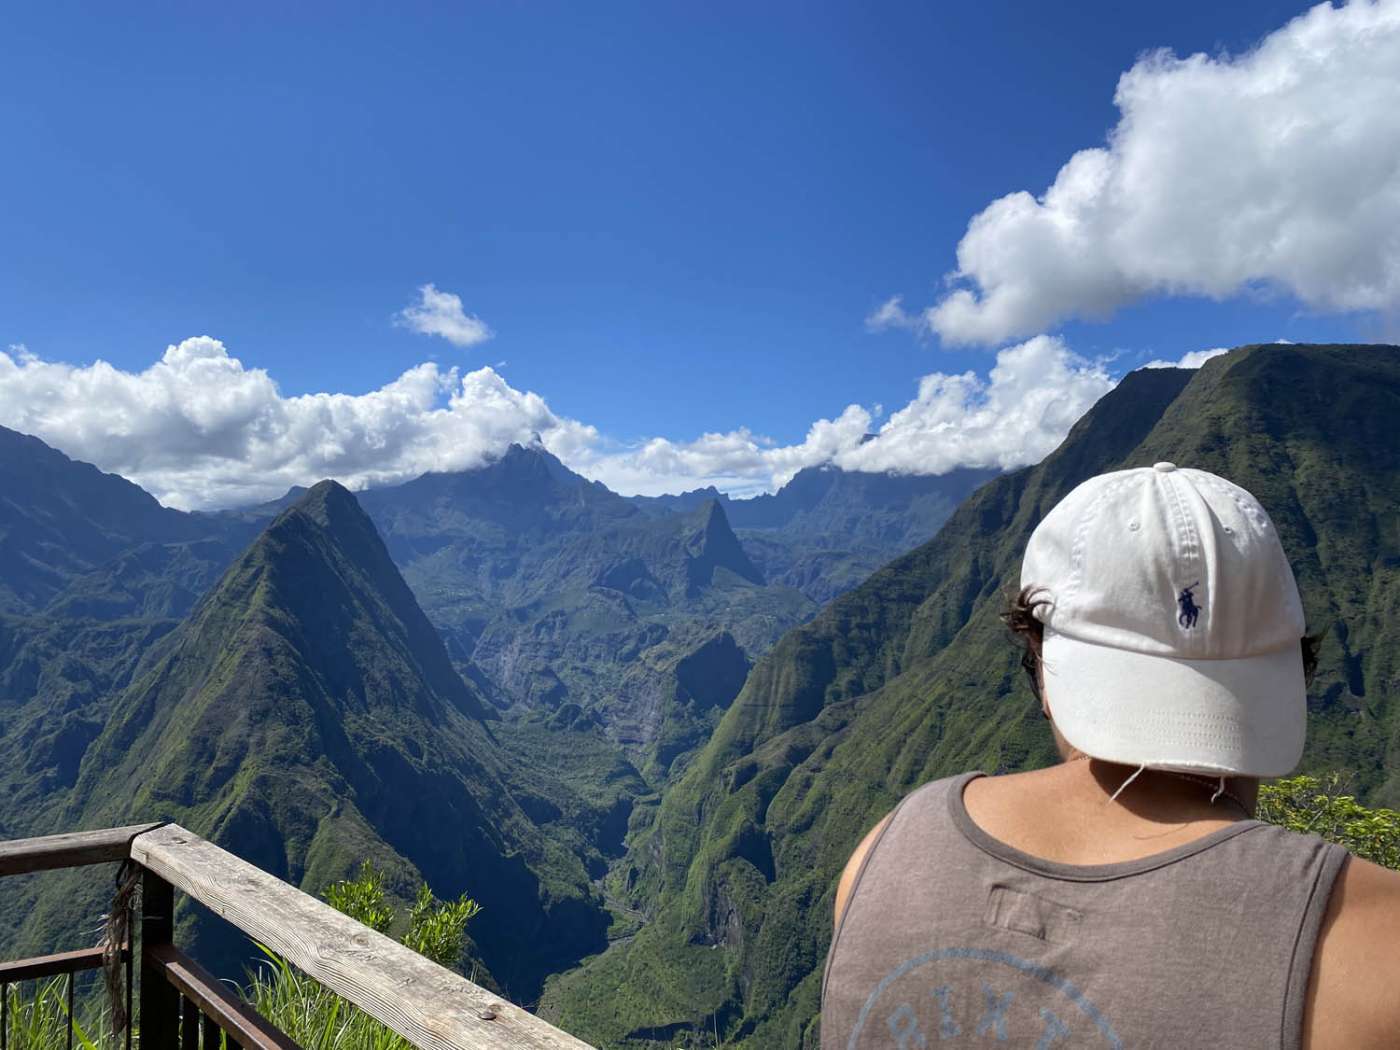 Le point de vue Cap Noir - Roche Vert Bouteille - La Réunion